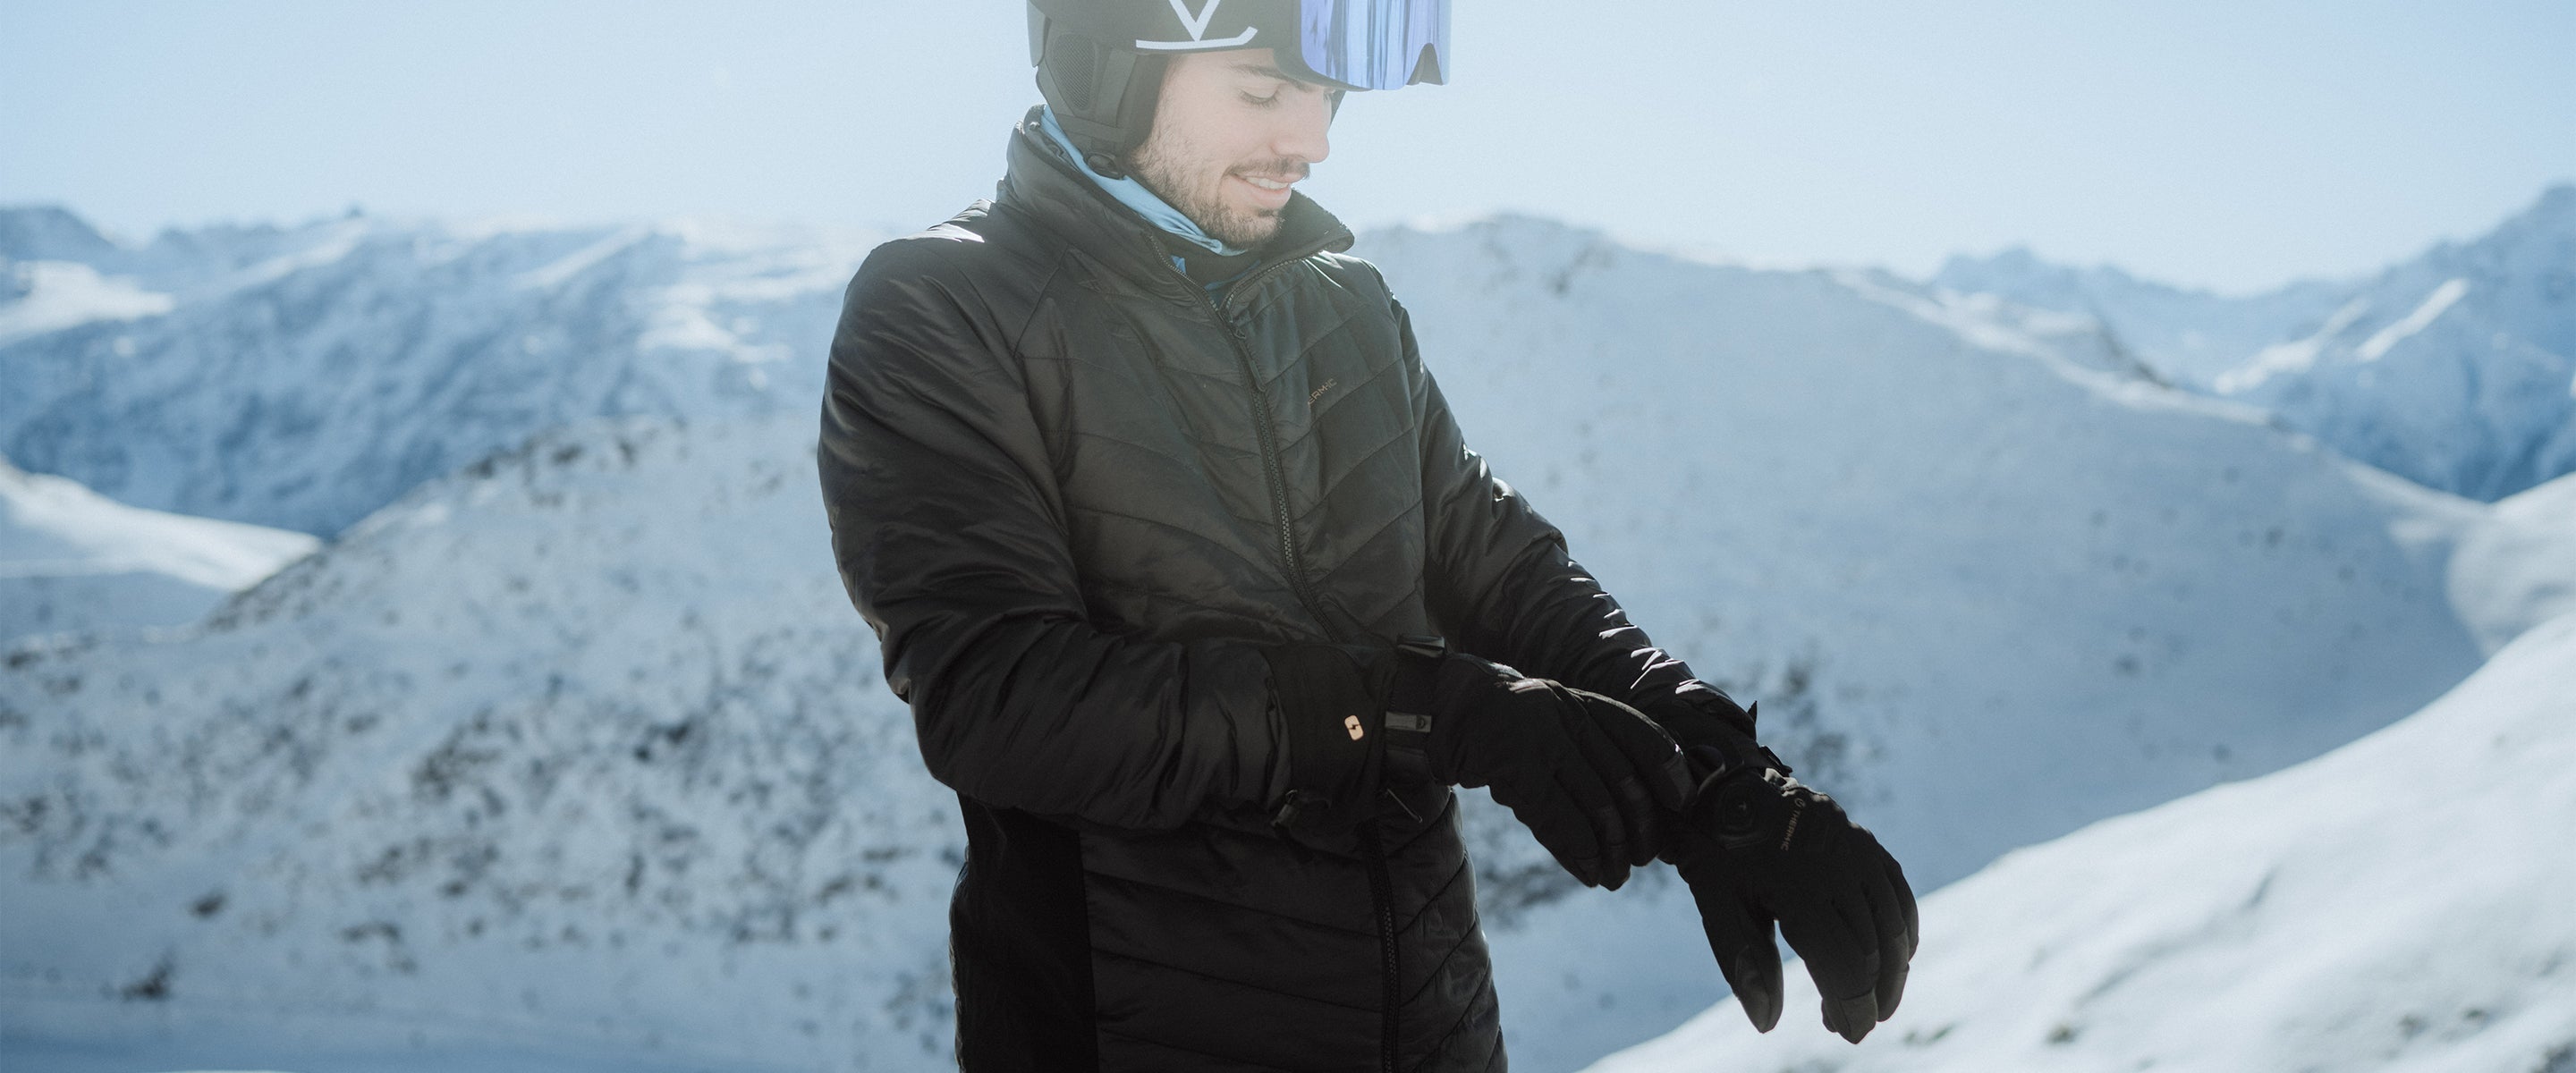 Comment bien choisir ses gants de ski et passer l'hiver au chaud ?